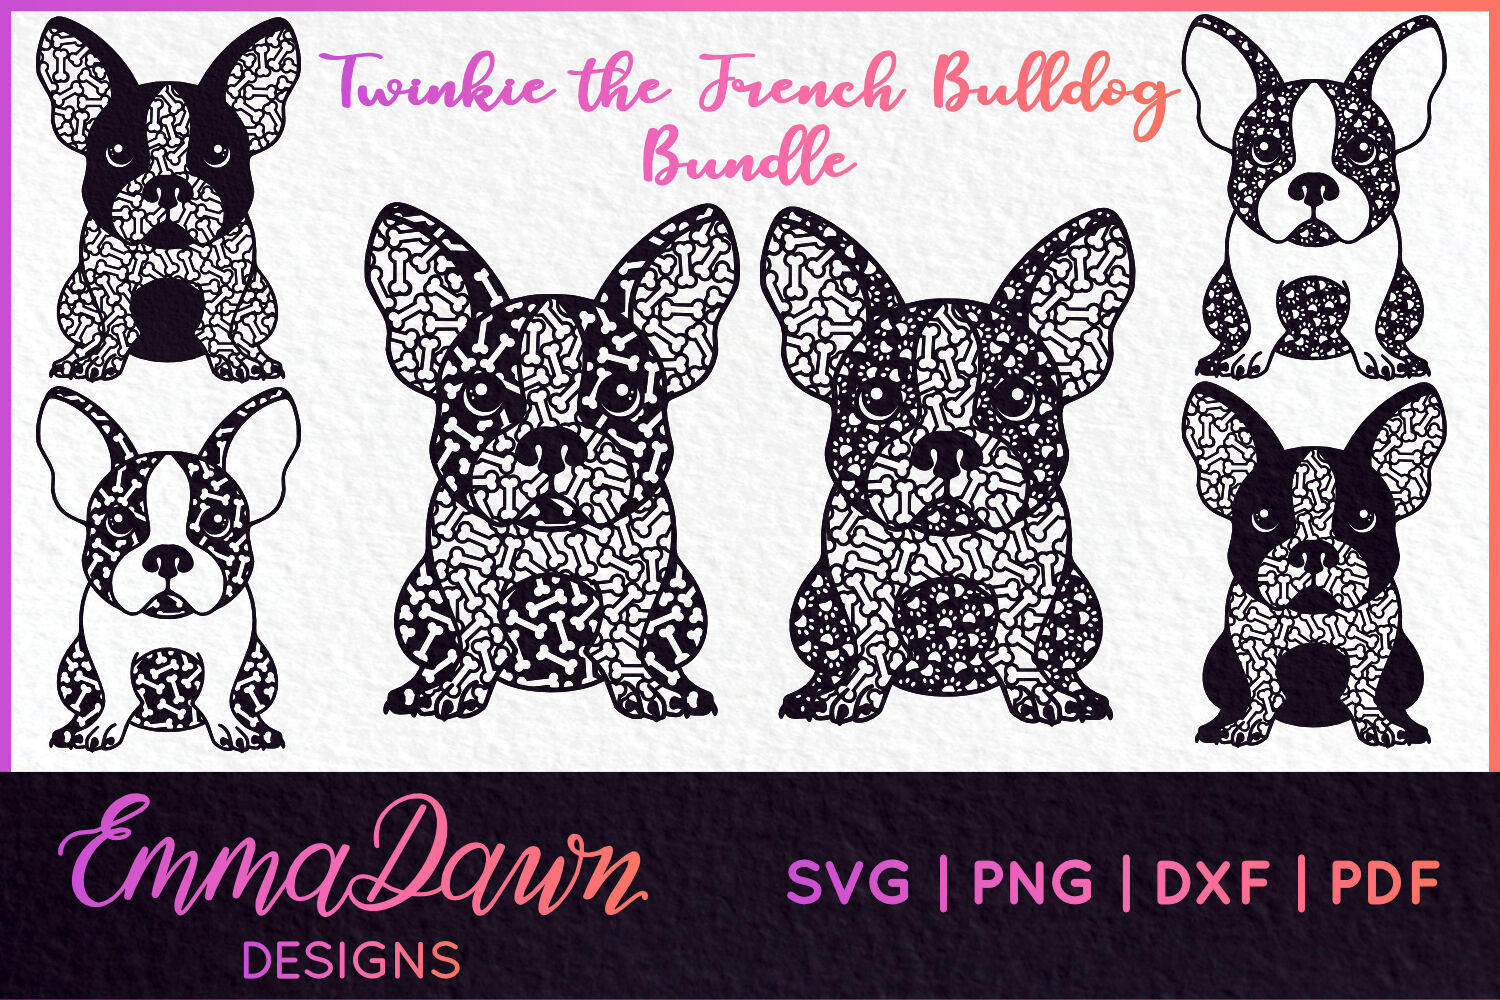 Twinkie The French Bulldog Bundle 6 Designs Svg By Emma Dawn Designs Thehungryjpeg Com